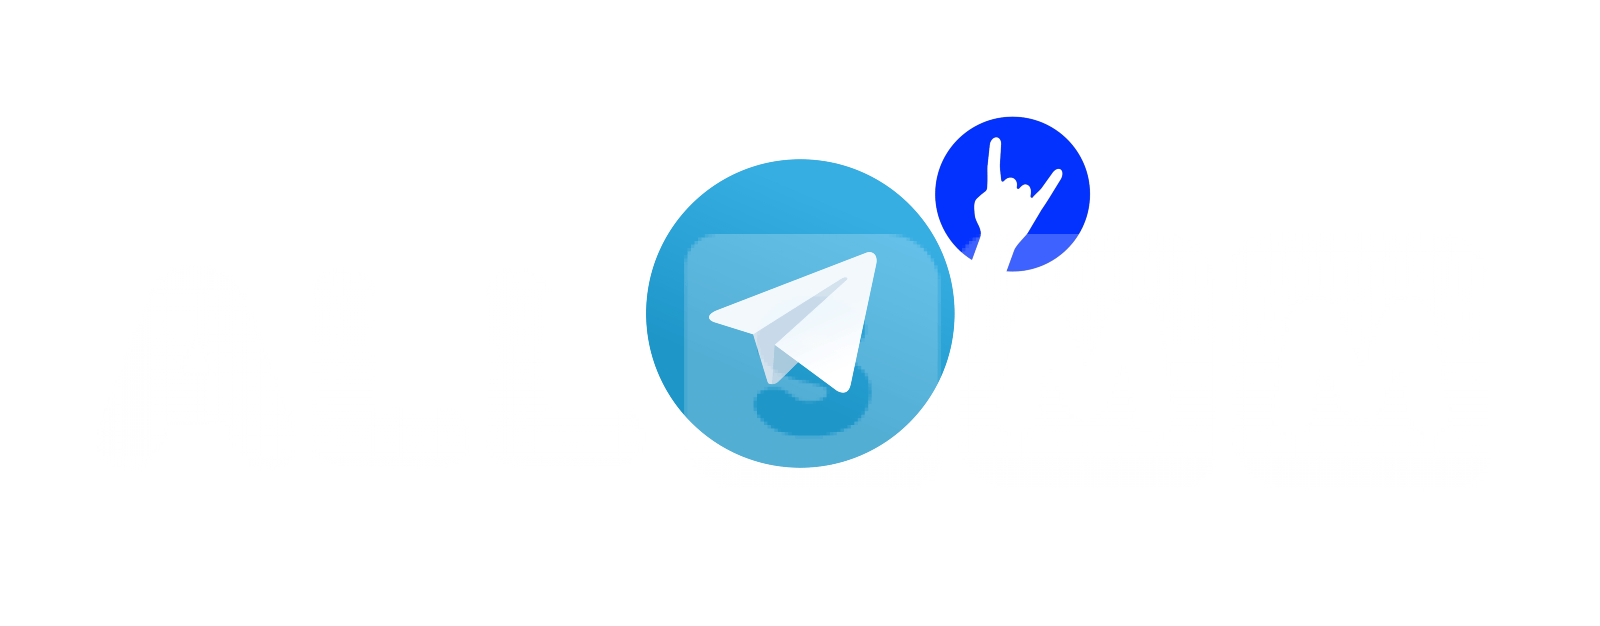 Contenu sur Telegram. Quels sont les thèmes de chaînes Telegram les plus populaires et les plus financés et pourquoi?